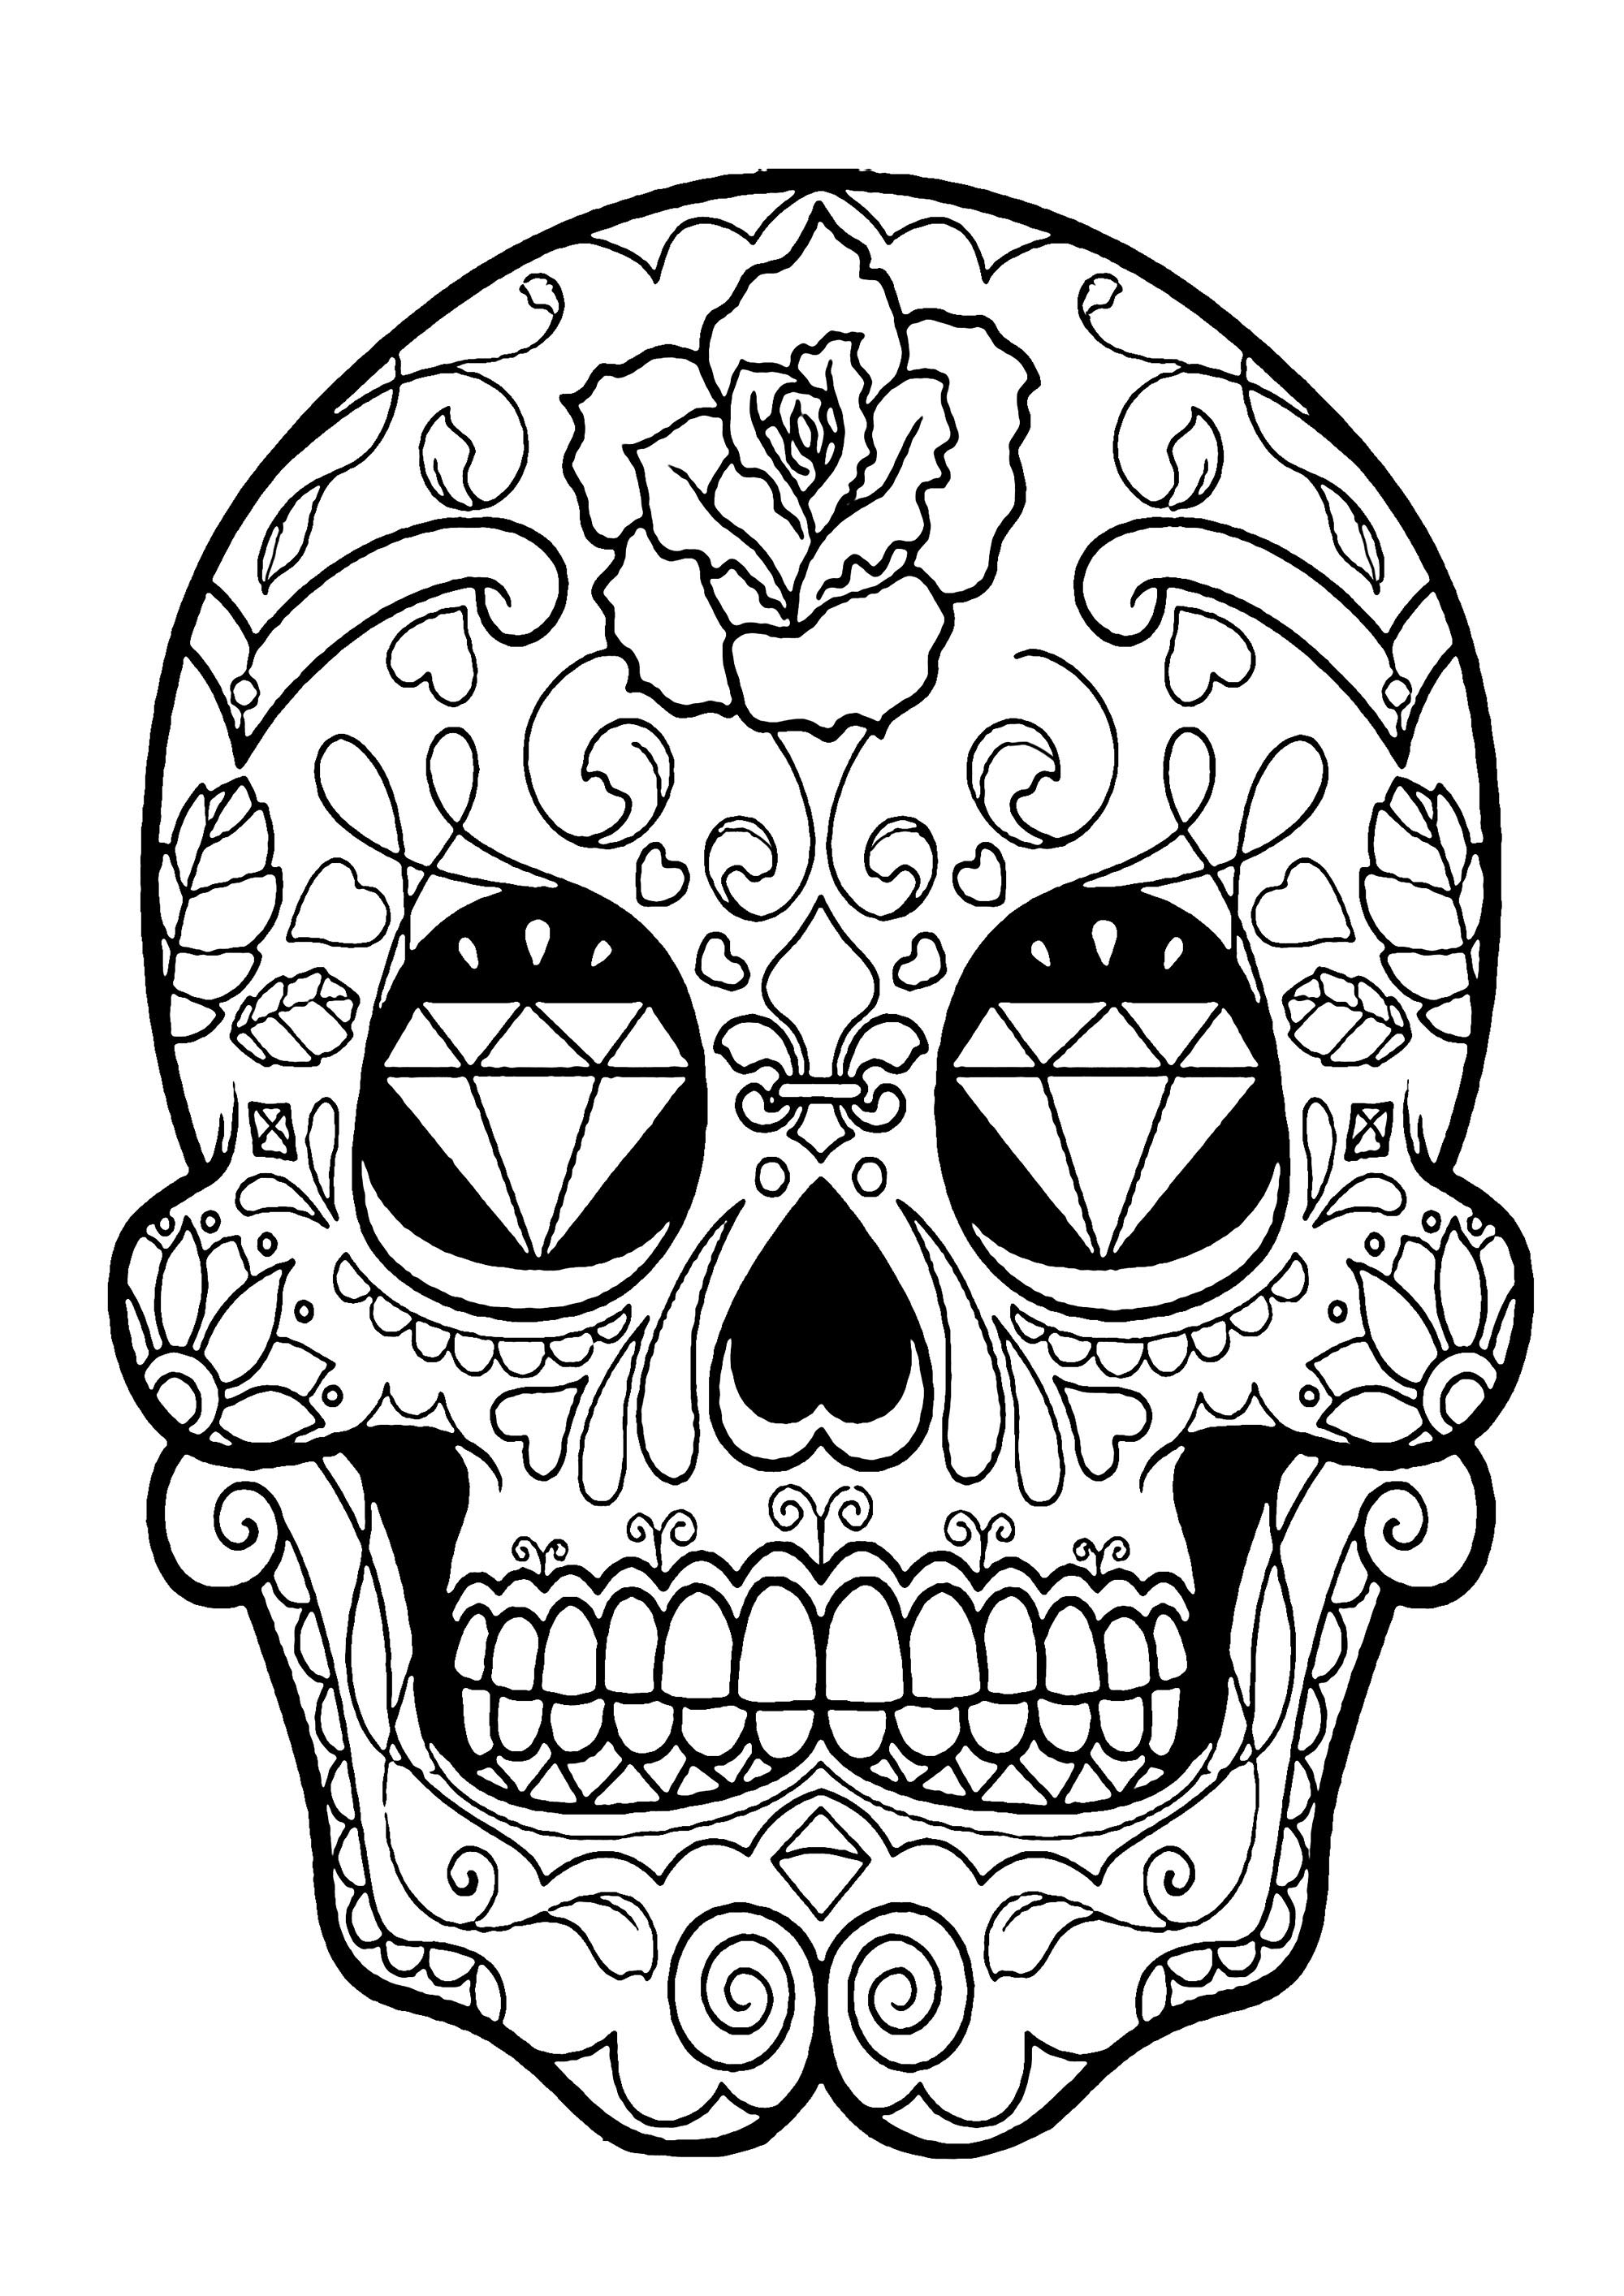 El Día de los Muertos / Day of the dead coloring page : Skull - 5, Artist : Art. Isabelle